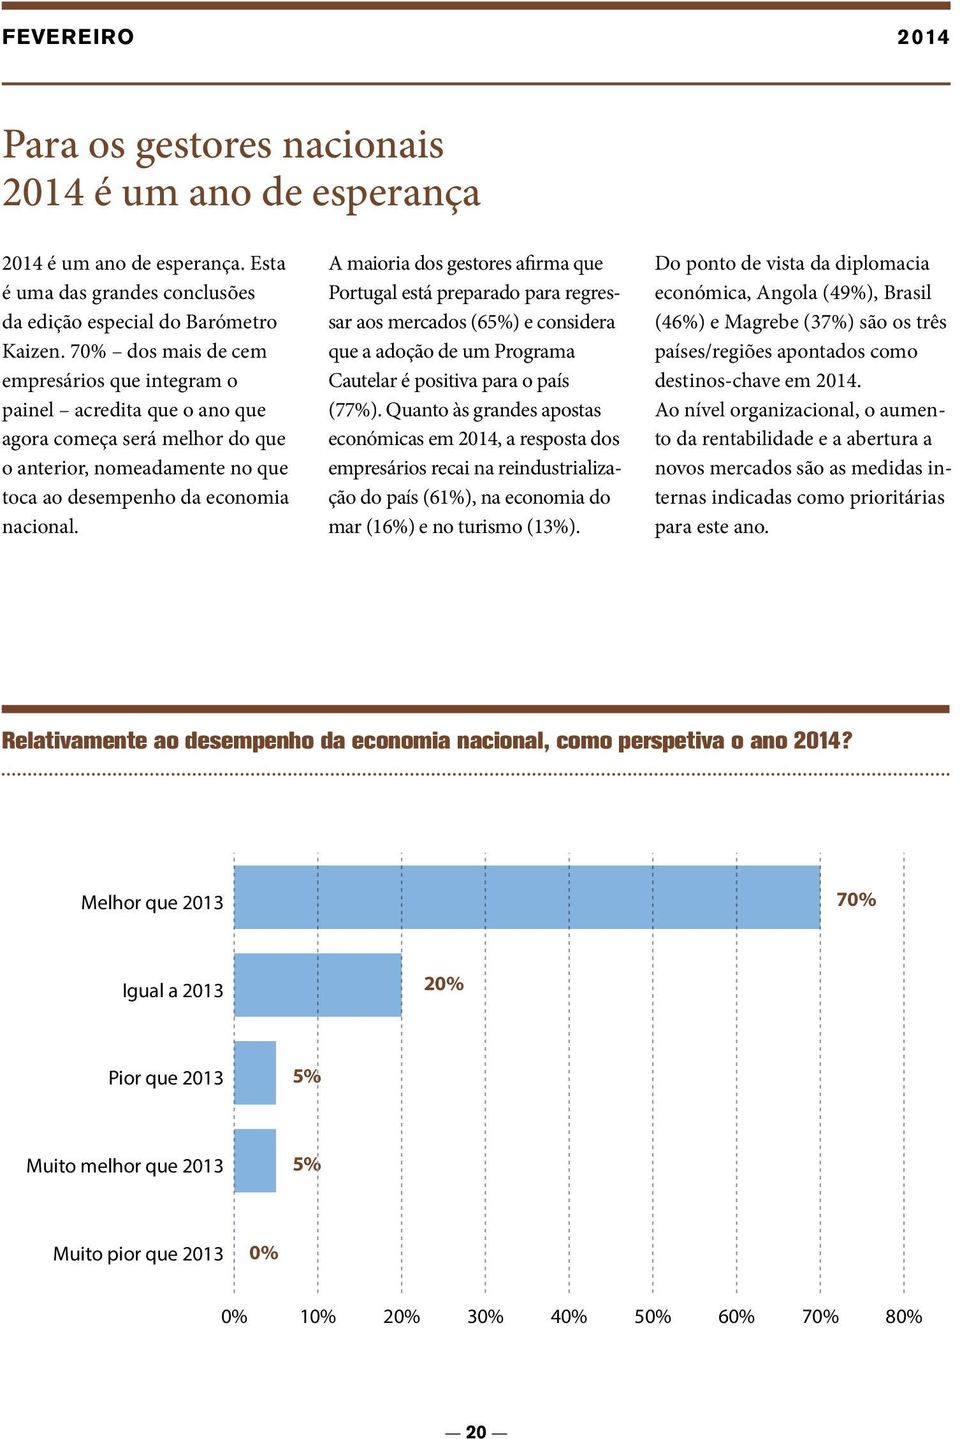 A maioria dos gestores afirma que Portugal está preparado para regressar aos mercados (65%) e considera que a adoção de um Programa Cautelar é positiva para o país (77%).